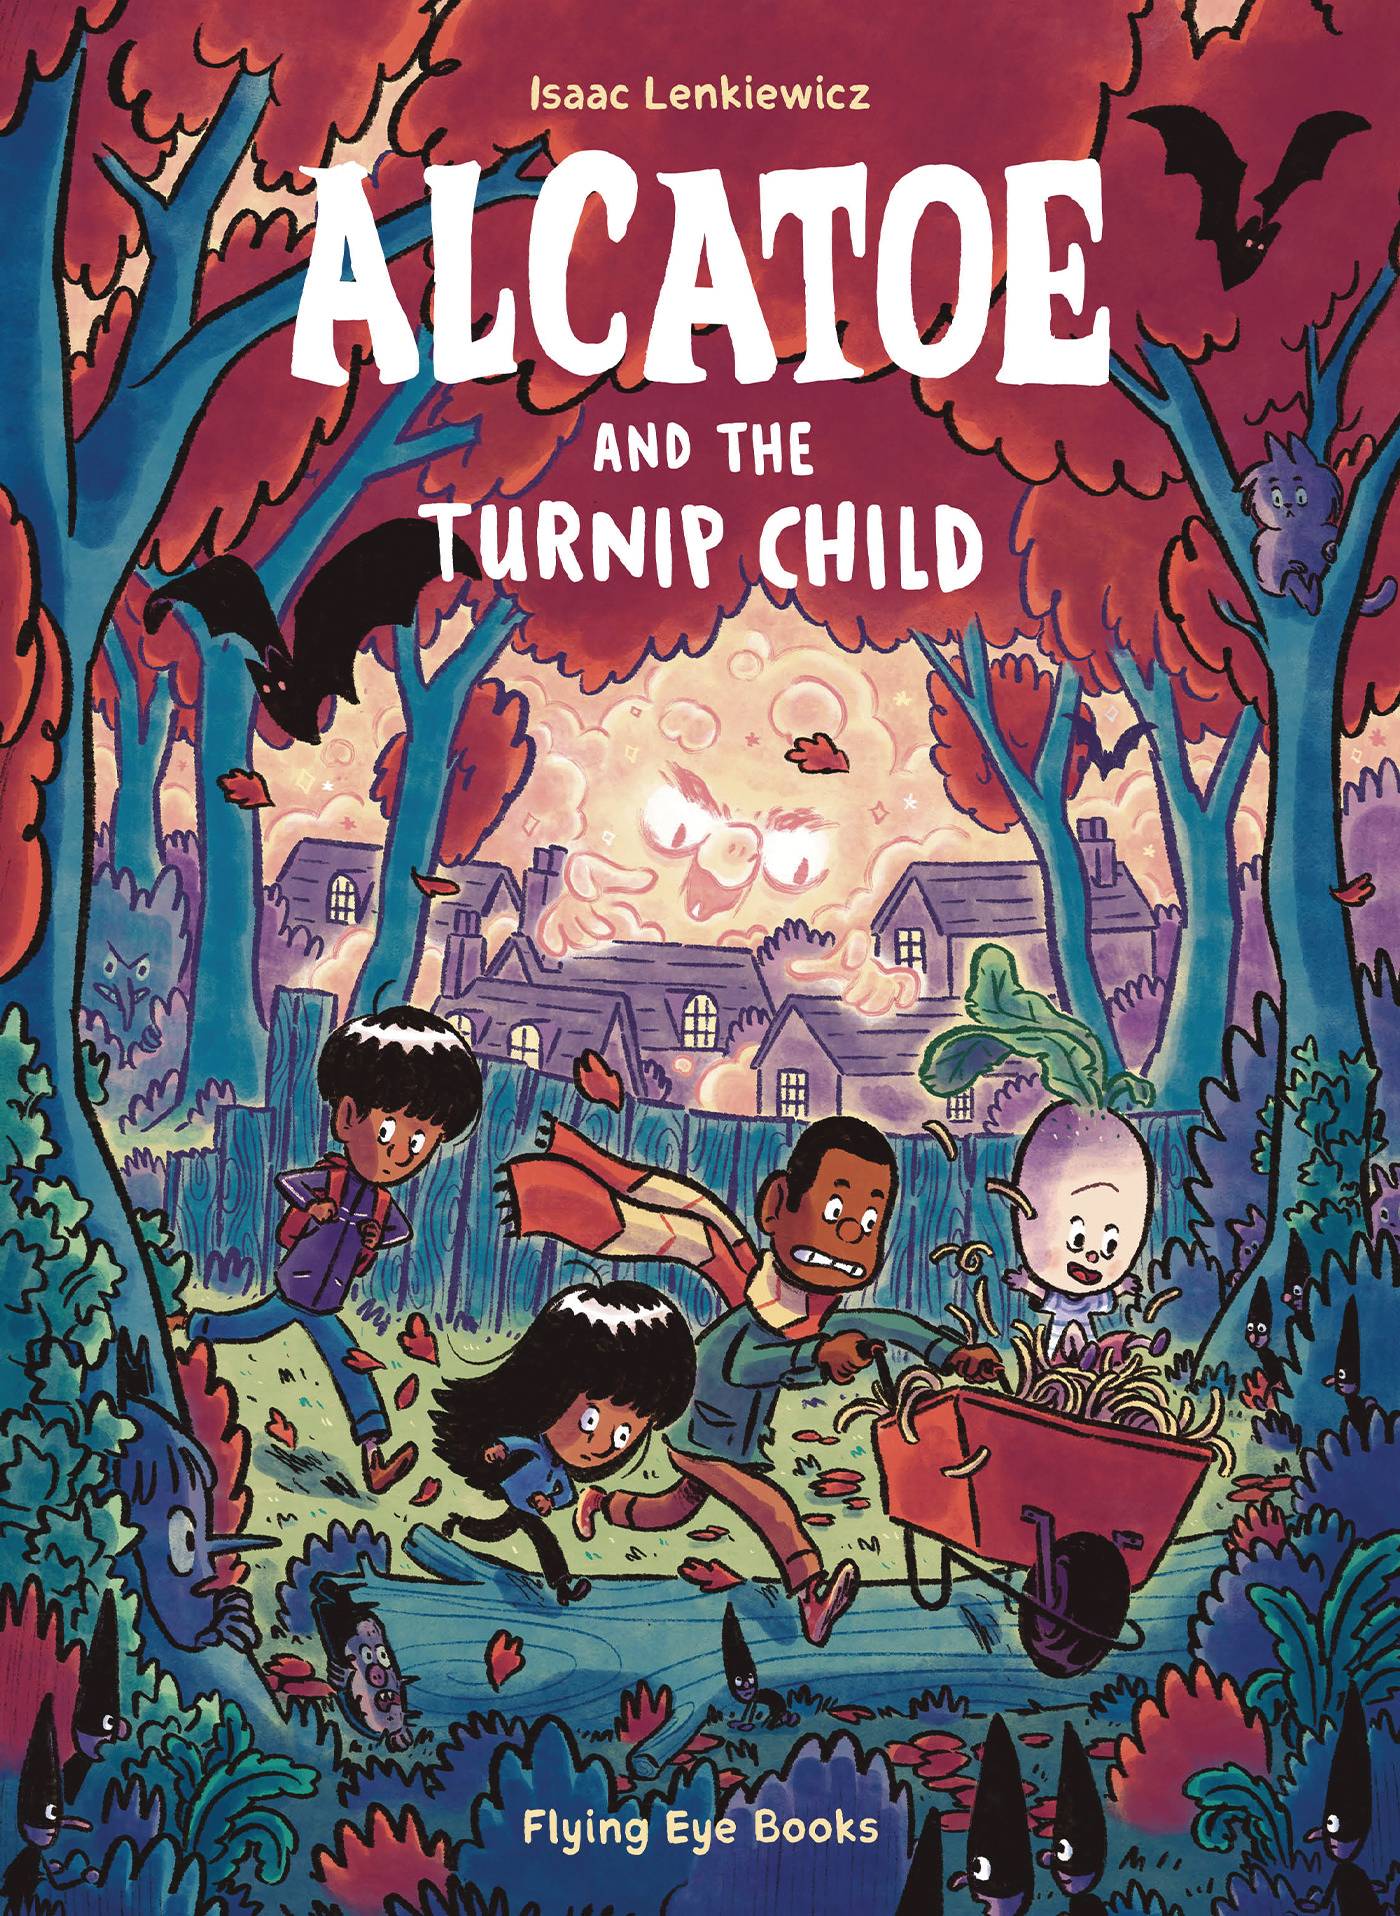 ALCATOE AND THE TURNIP CHILD GN - Third Eye